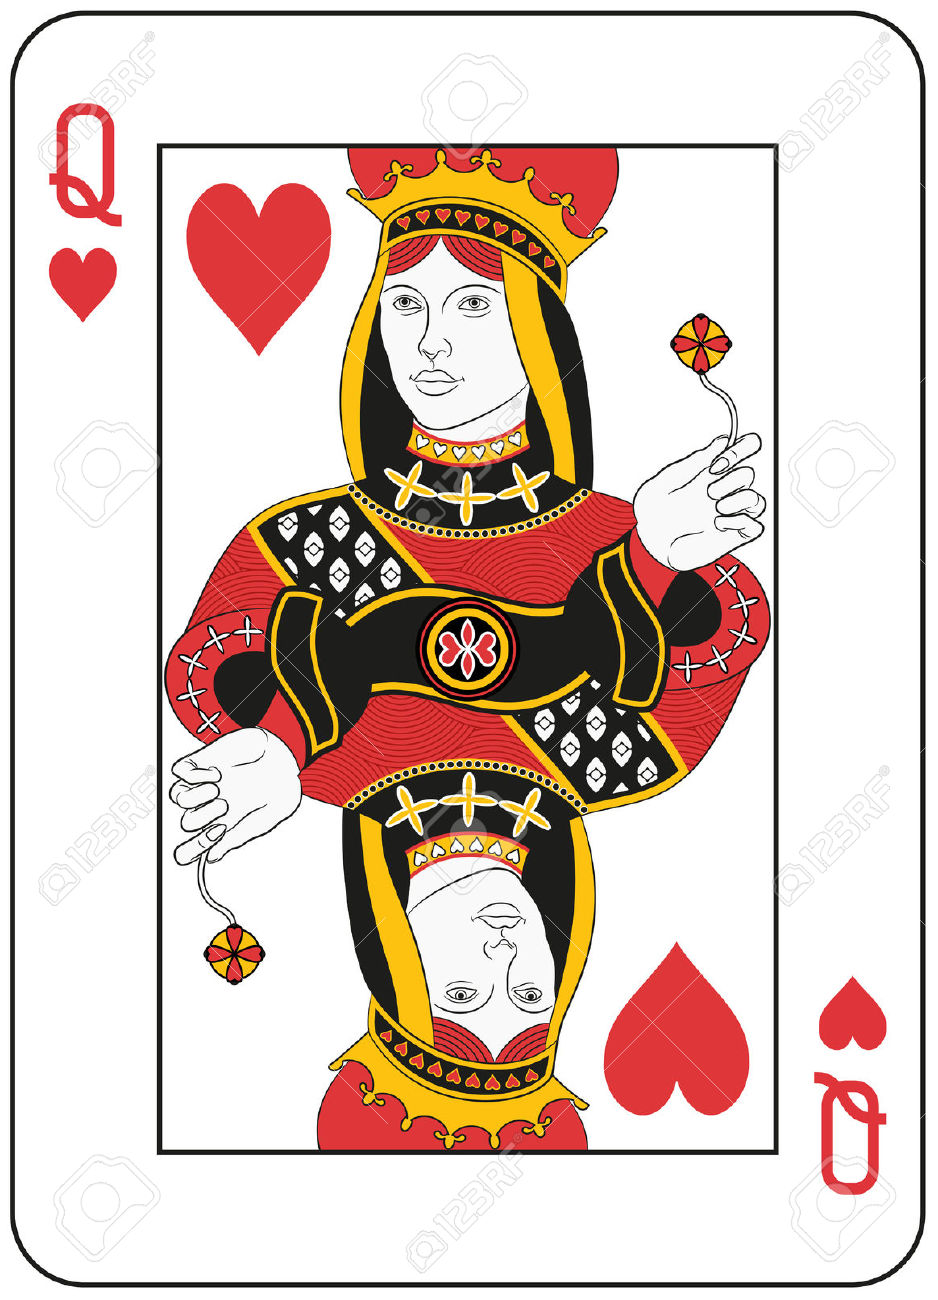 queen of hearts: Queen of hearts. Original design